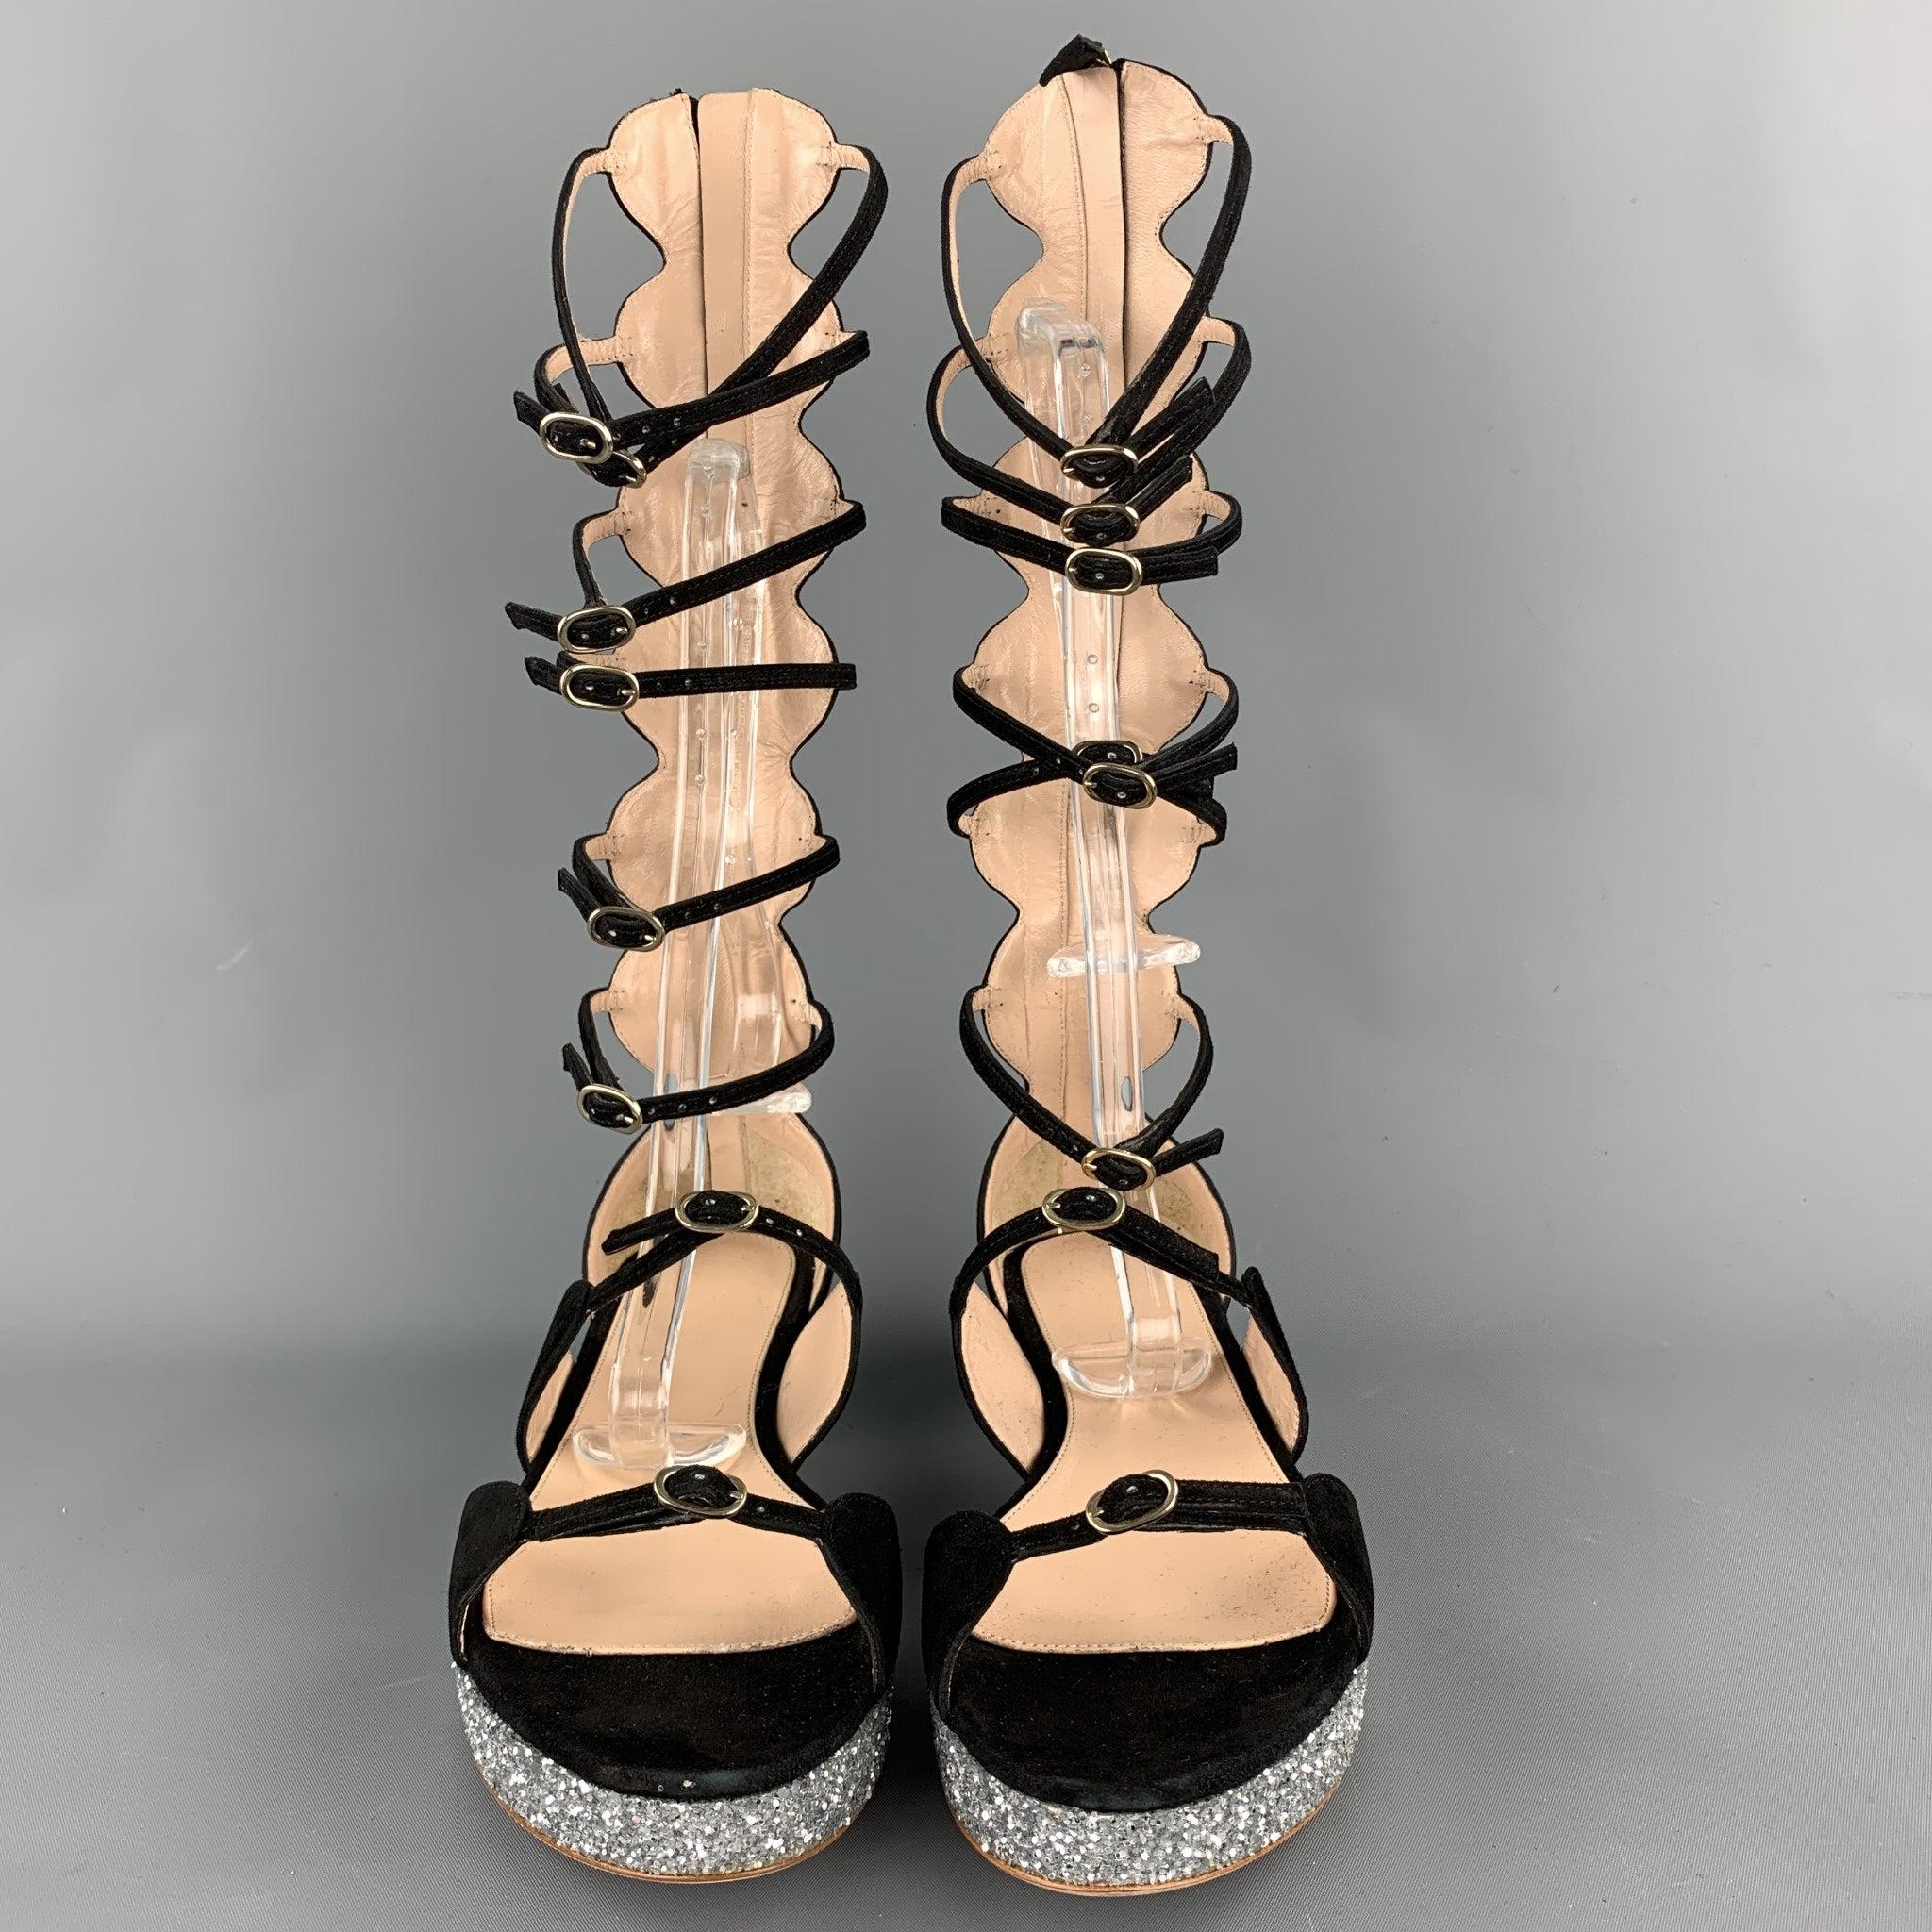 Les sandales VALLI de GIAMBATTISTA sont en daim noir avec une plateforme pailletée, un style gladiateur et une fermeture à glissière à l'arrière. Livré avec boîte. Fabriqué en Italie.
Etat d'occasion. 

Marqué :   IT 38 

Mesures : 
  Longueur : 9,5